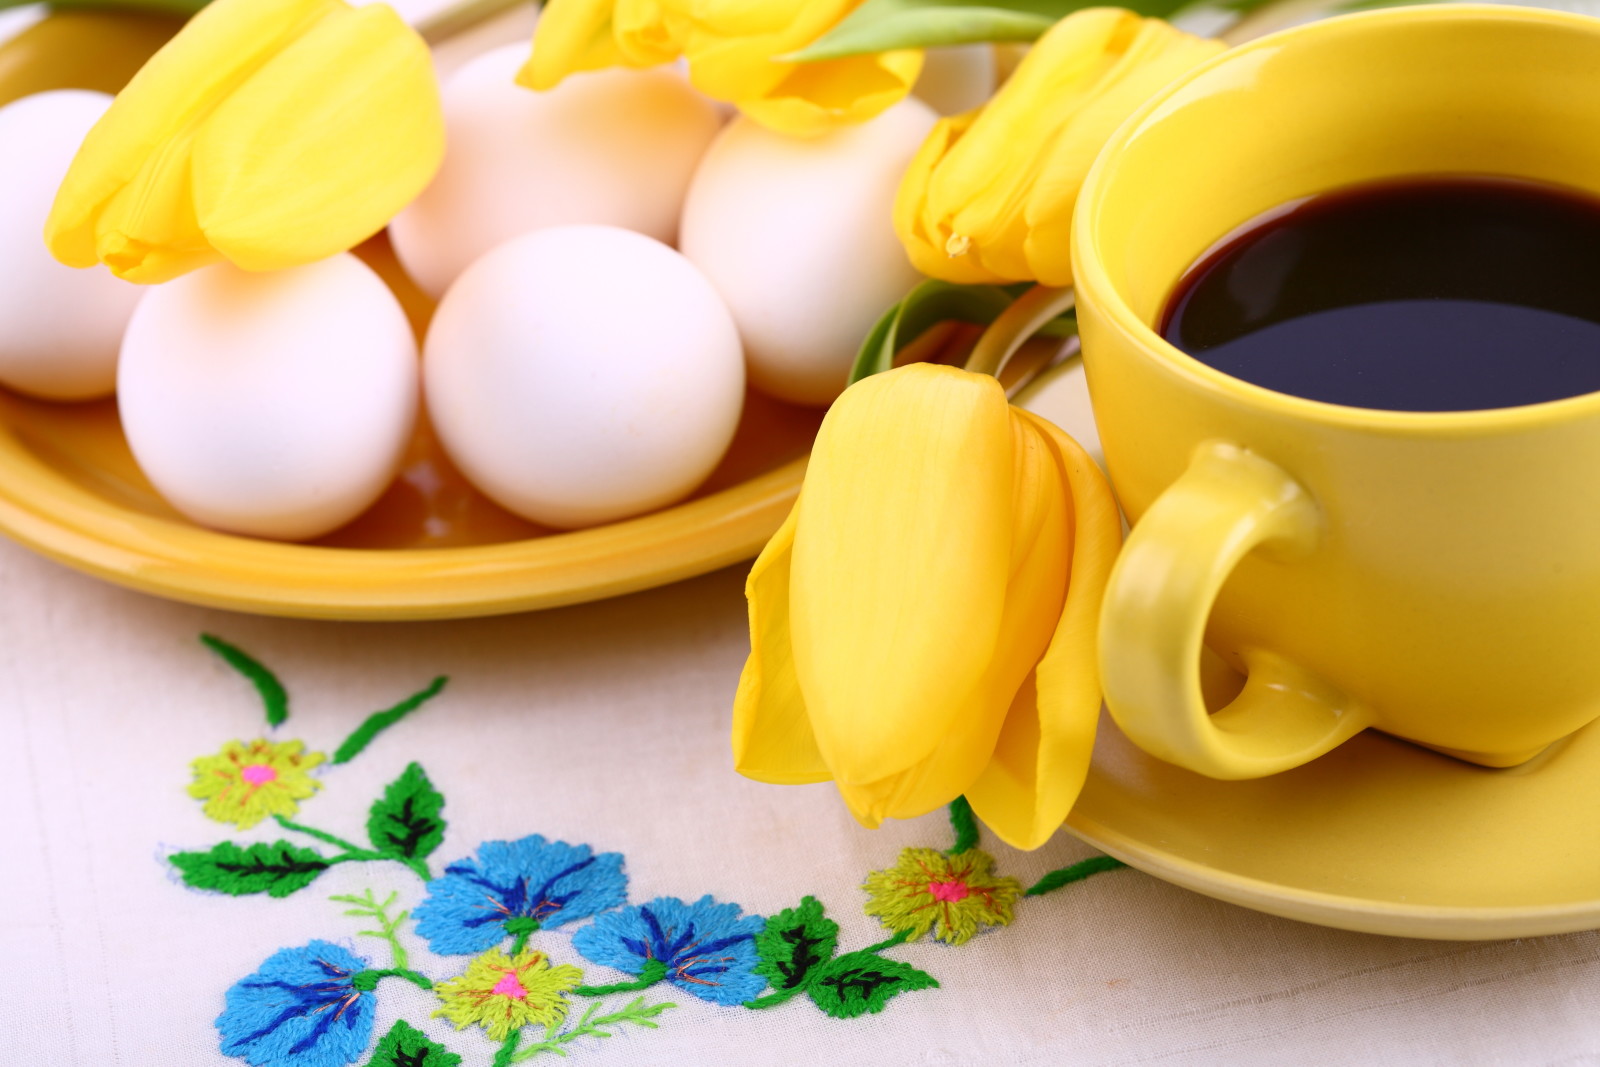 màu vàng, trứng, Hoa tulip, cà phê, Cốc